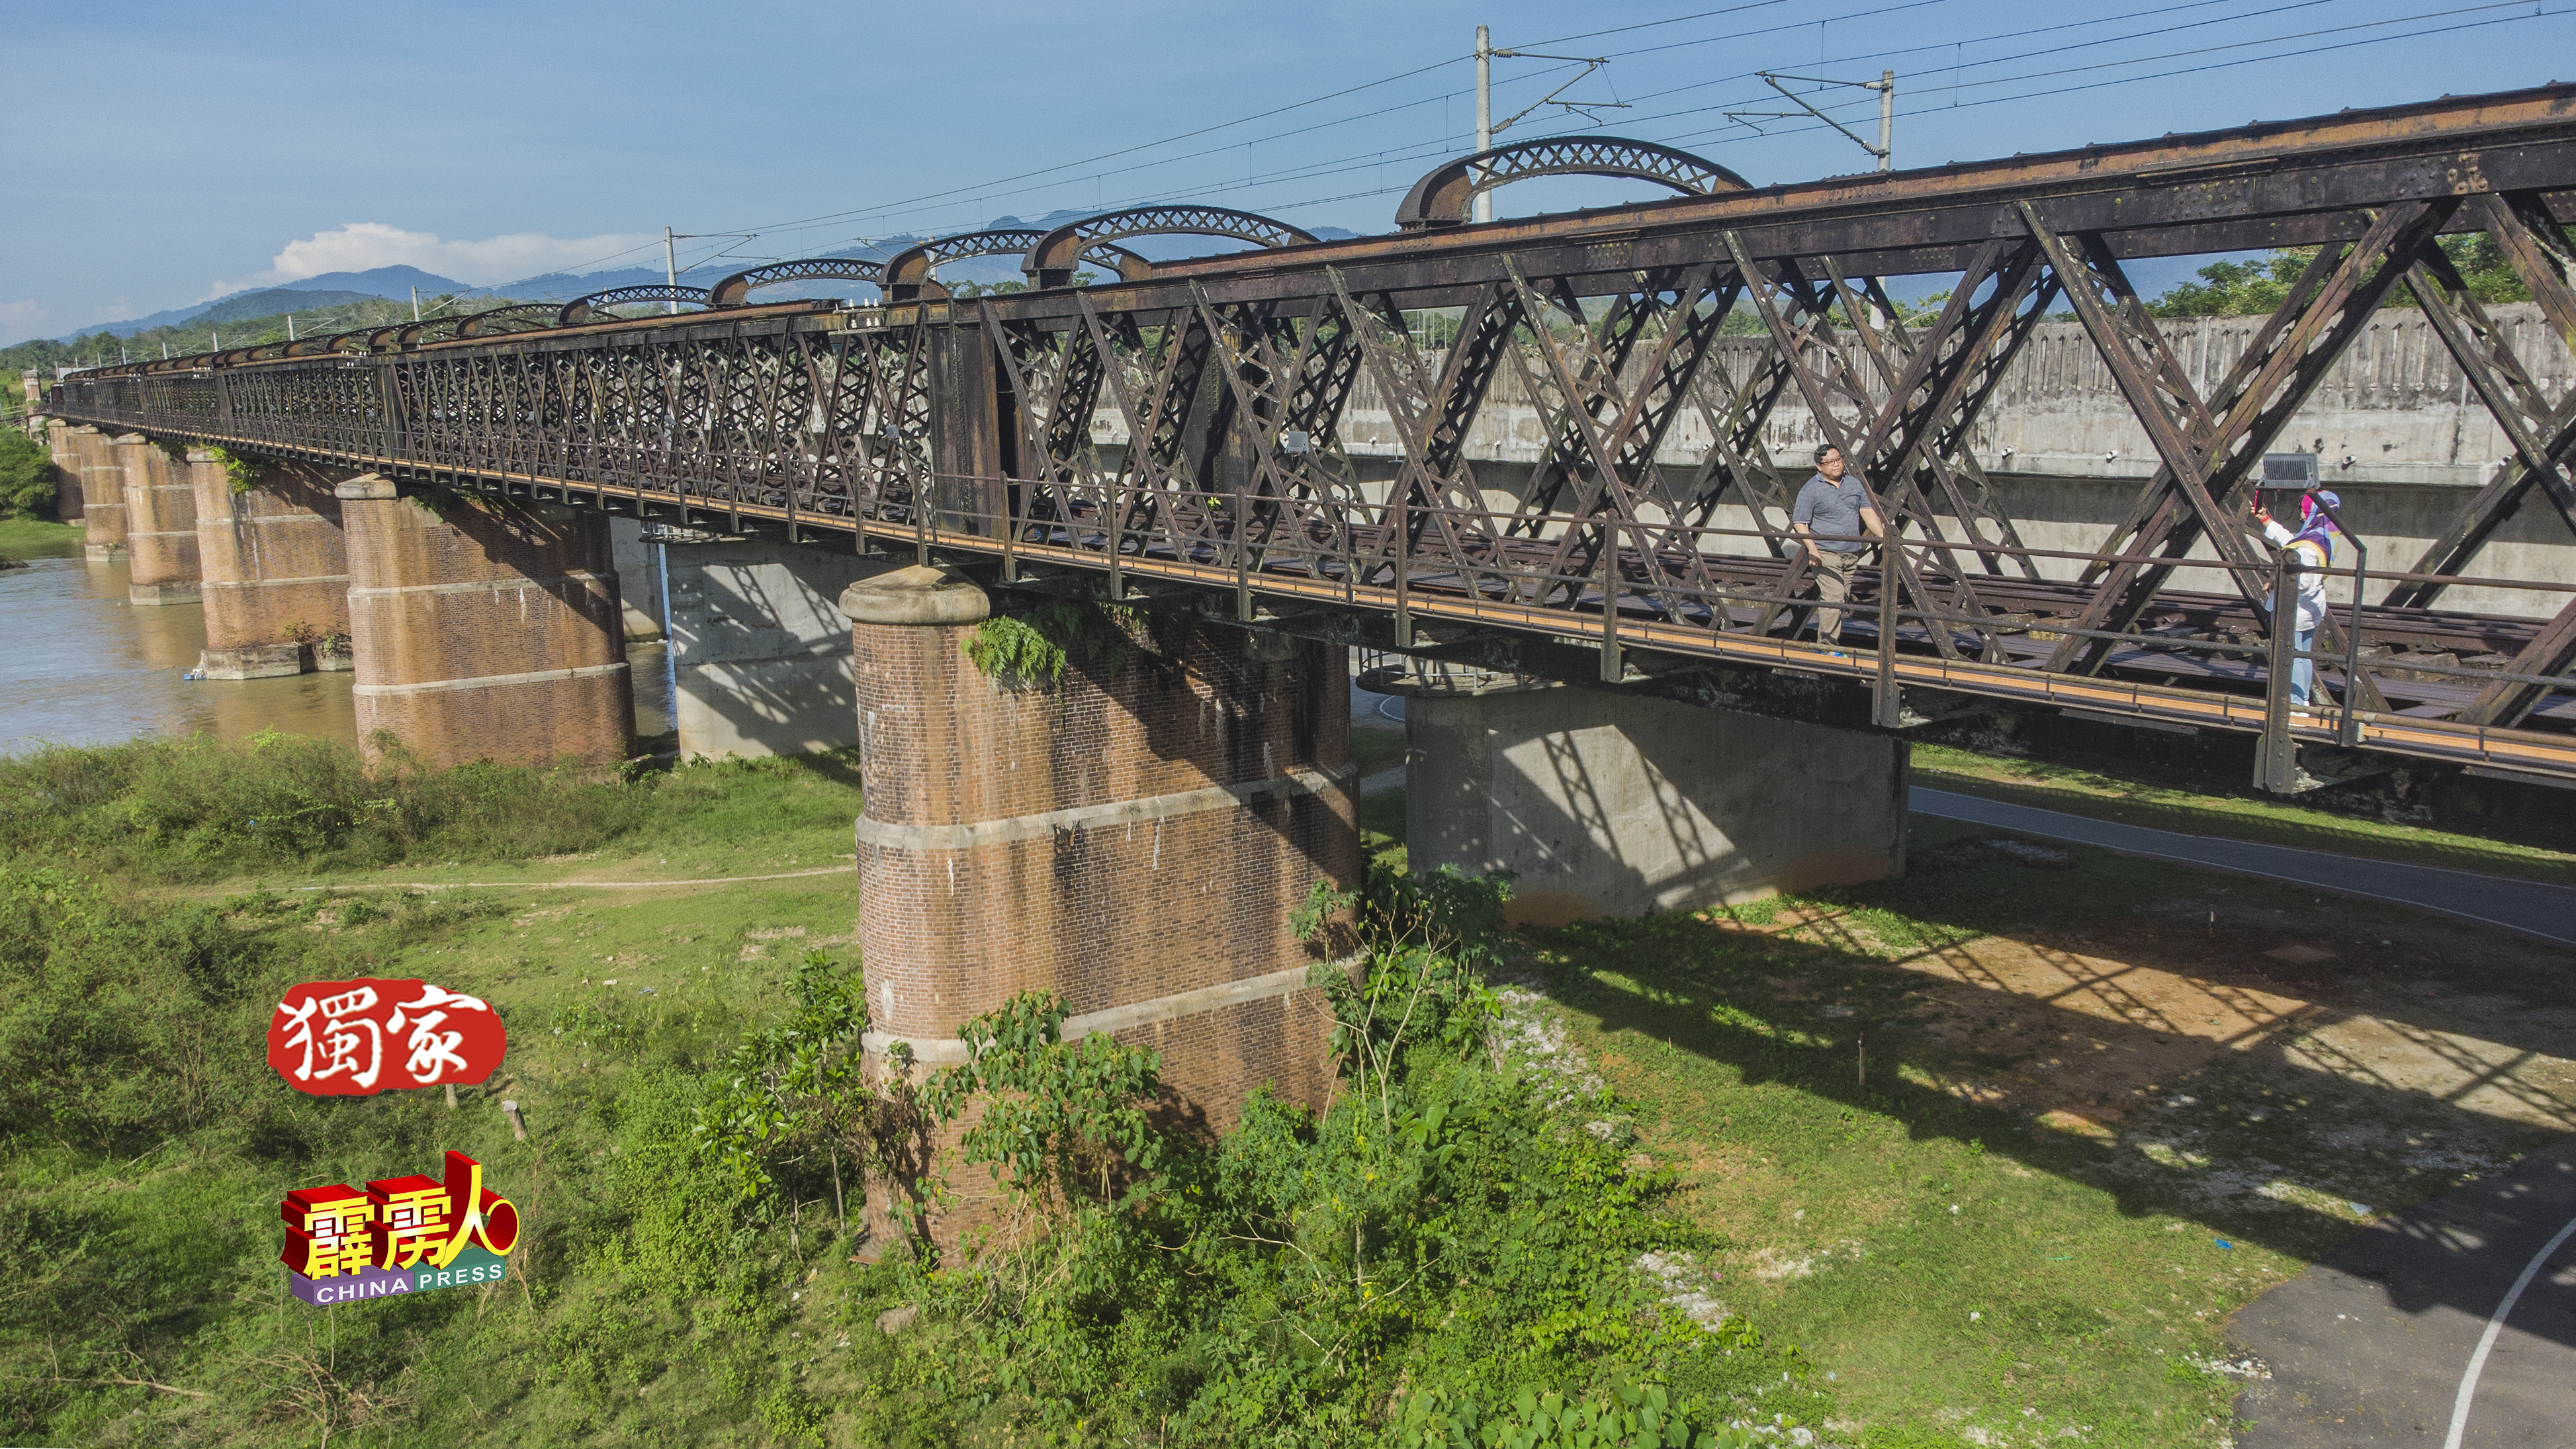 江沙宁罗的维多利亚百年火车桥，是霹雳州近年来掘起的旅游点，许多游客慕名而来。